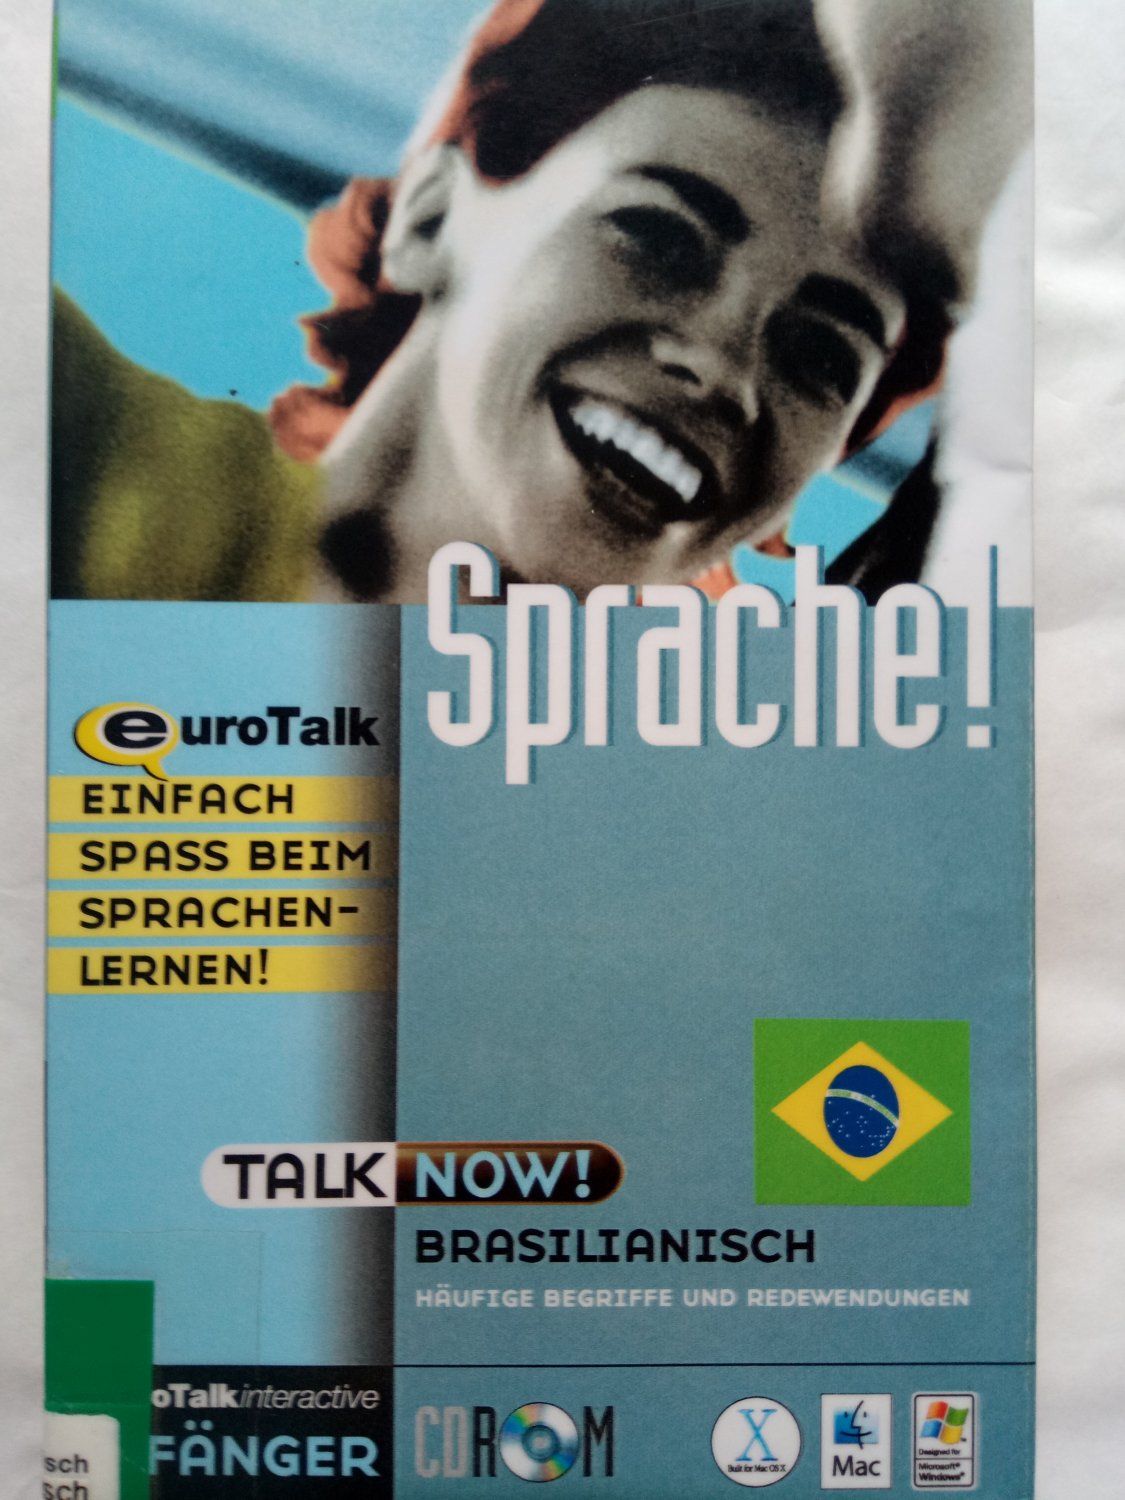 Talk Now! Brasilianisch, 1 CD-ROM Häufige Begriffe und Redewendungen.